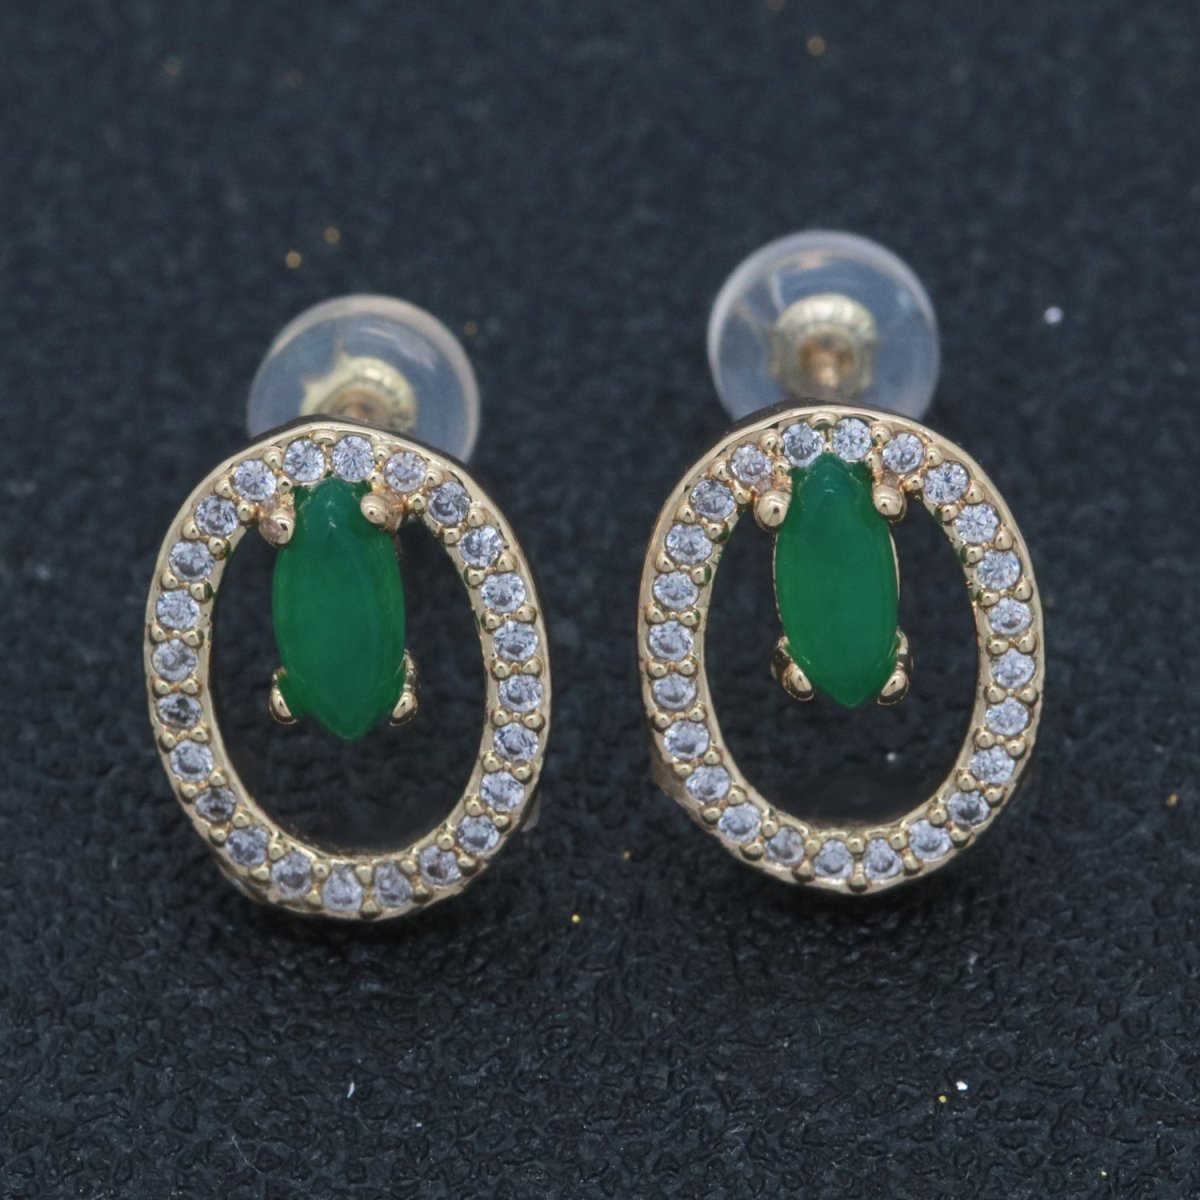 Gold Filled Studs / Dainty Green Earrings / Green Gem Earrings / Emerald Earrings / Green Stone Earrings / CZ Stud Earring /Dainty Studs T-161 - DLUXCA